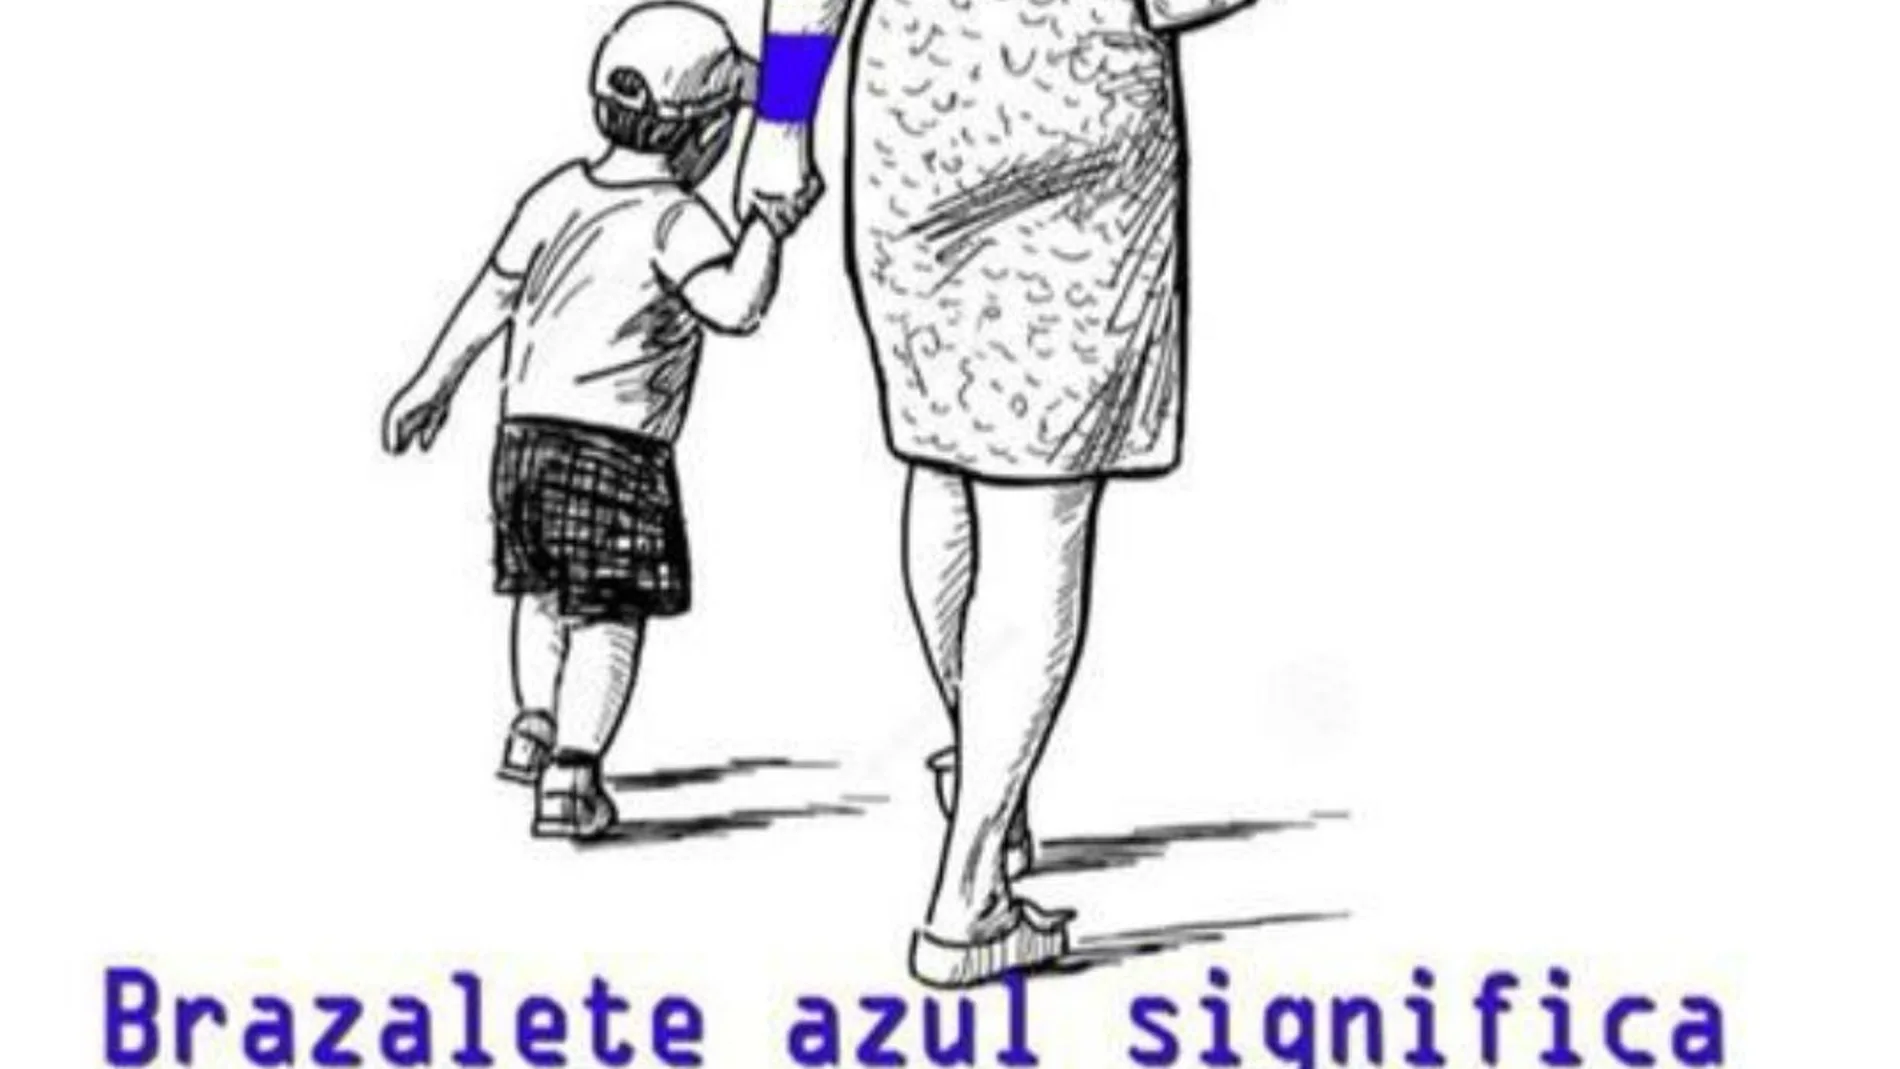 Campaña para que los niños con autismo puedan salir a la calle con un brazalete azul